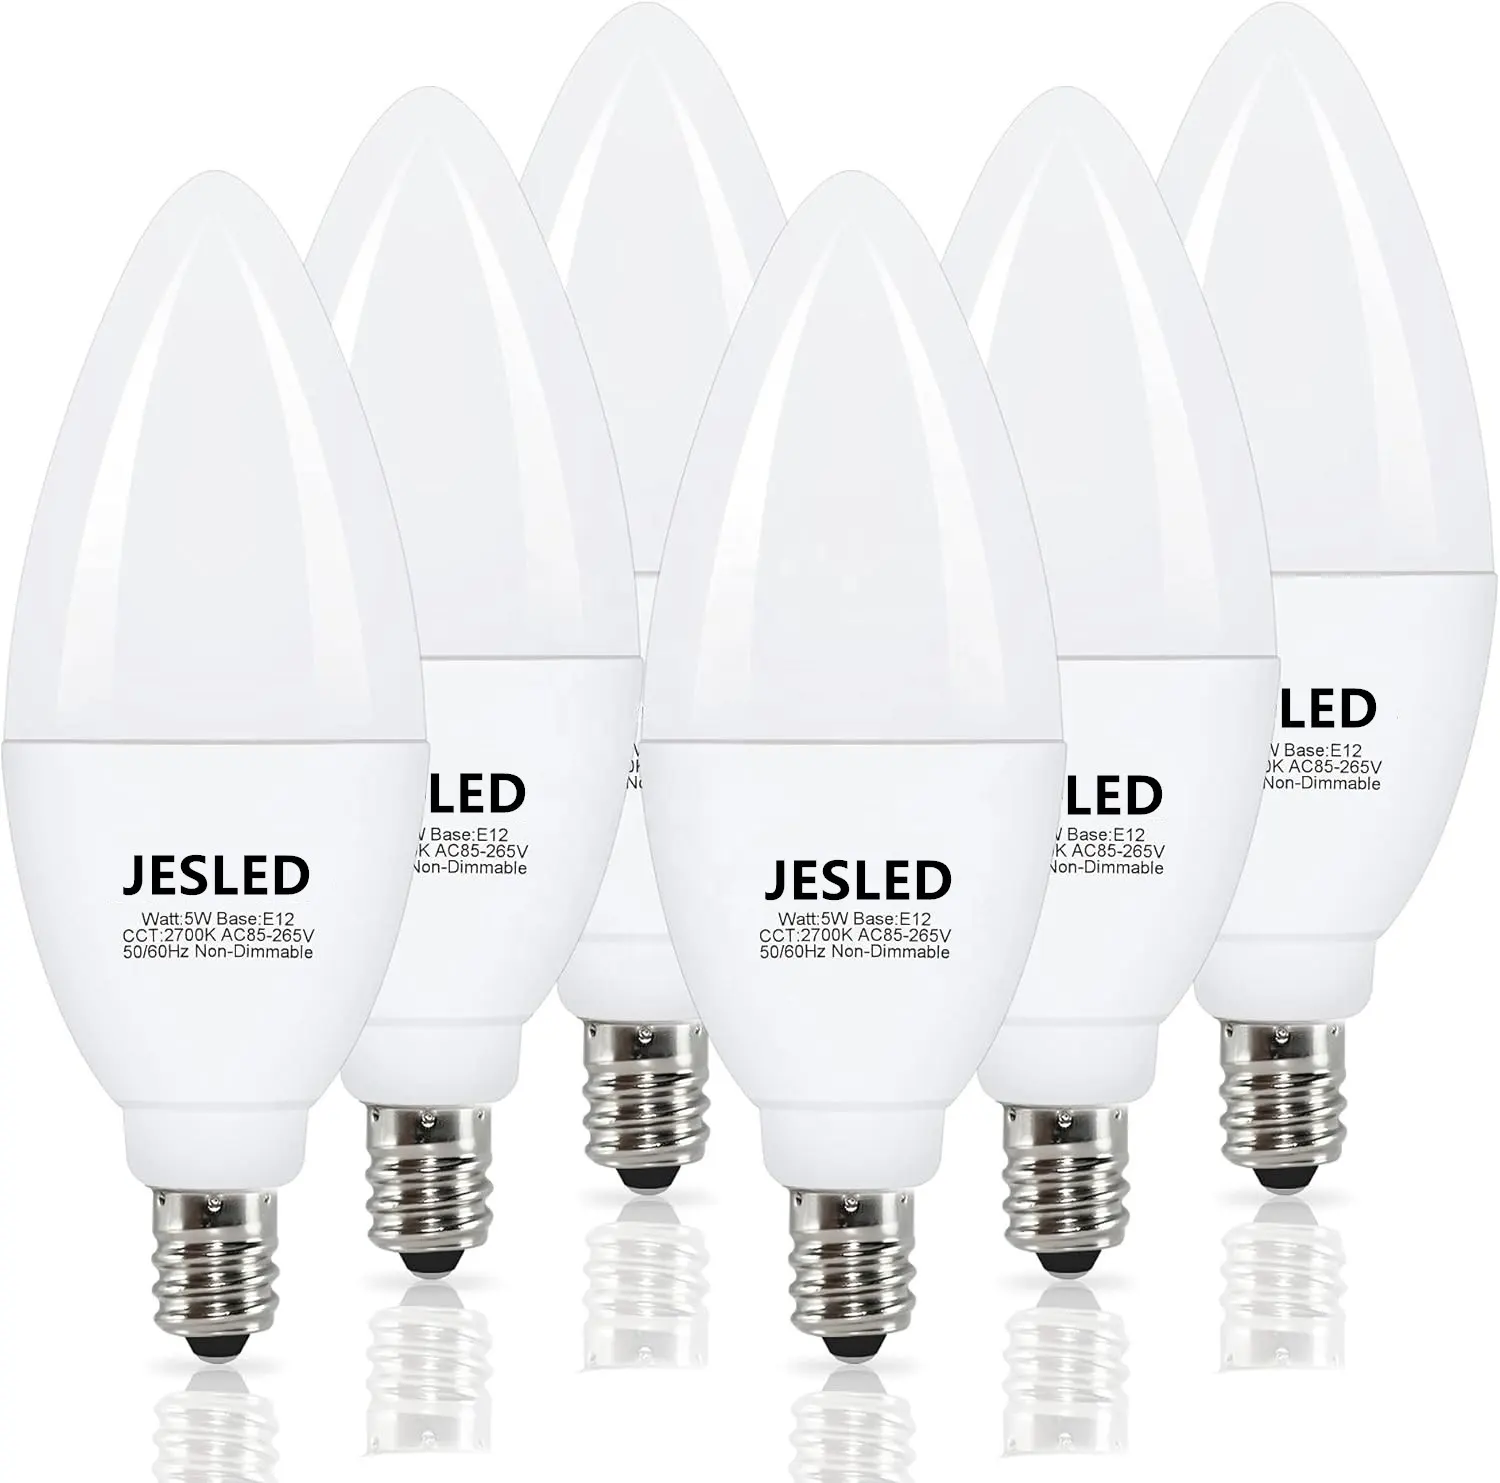 Jedled LED ánh sáng bóng đèn cho E14 cơ sở ấm trắng (2700K) 750 Lumens thay thế cho tiêu chuẩn 60 Wát bóng đèn E12 CE ukca ETL OEM ODM